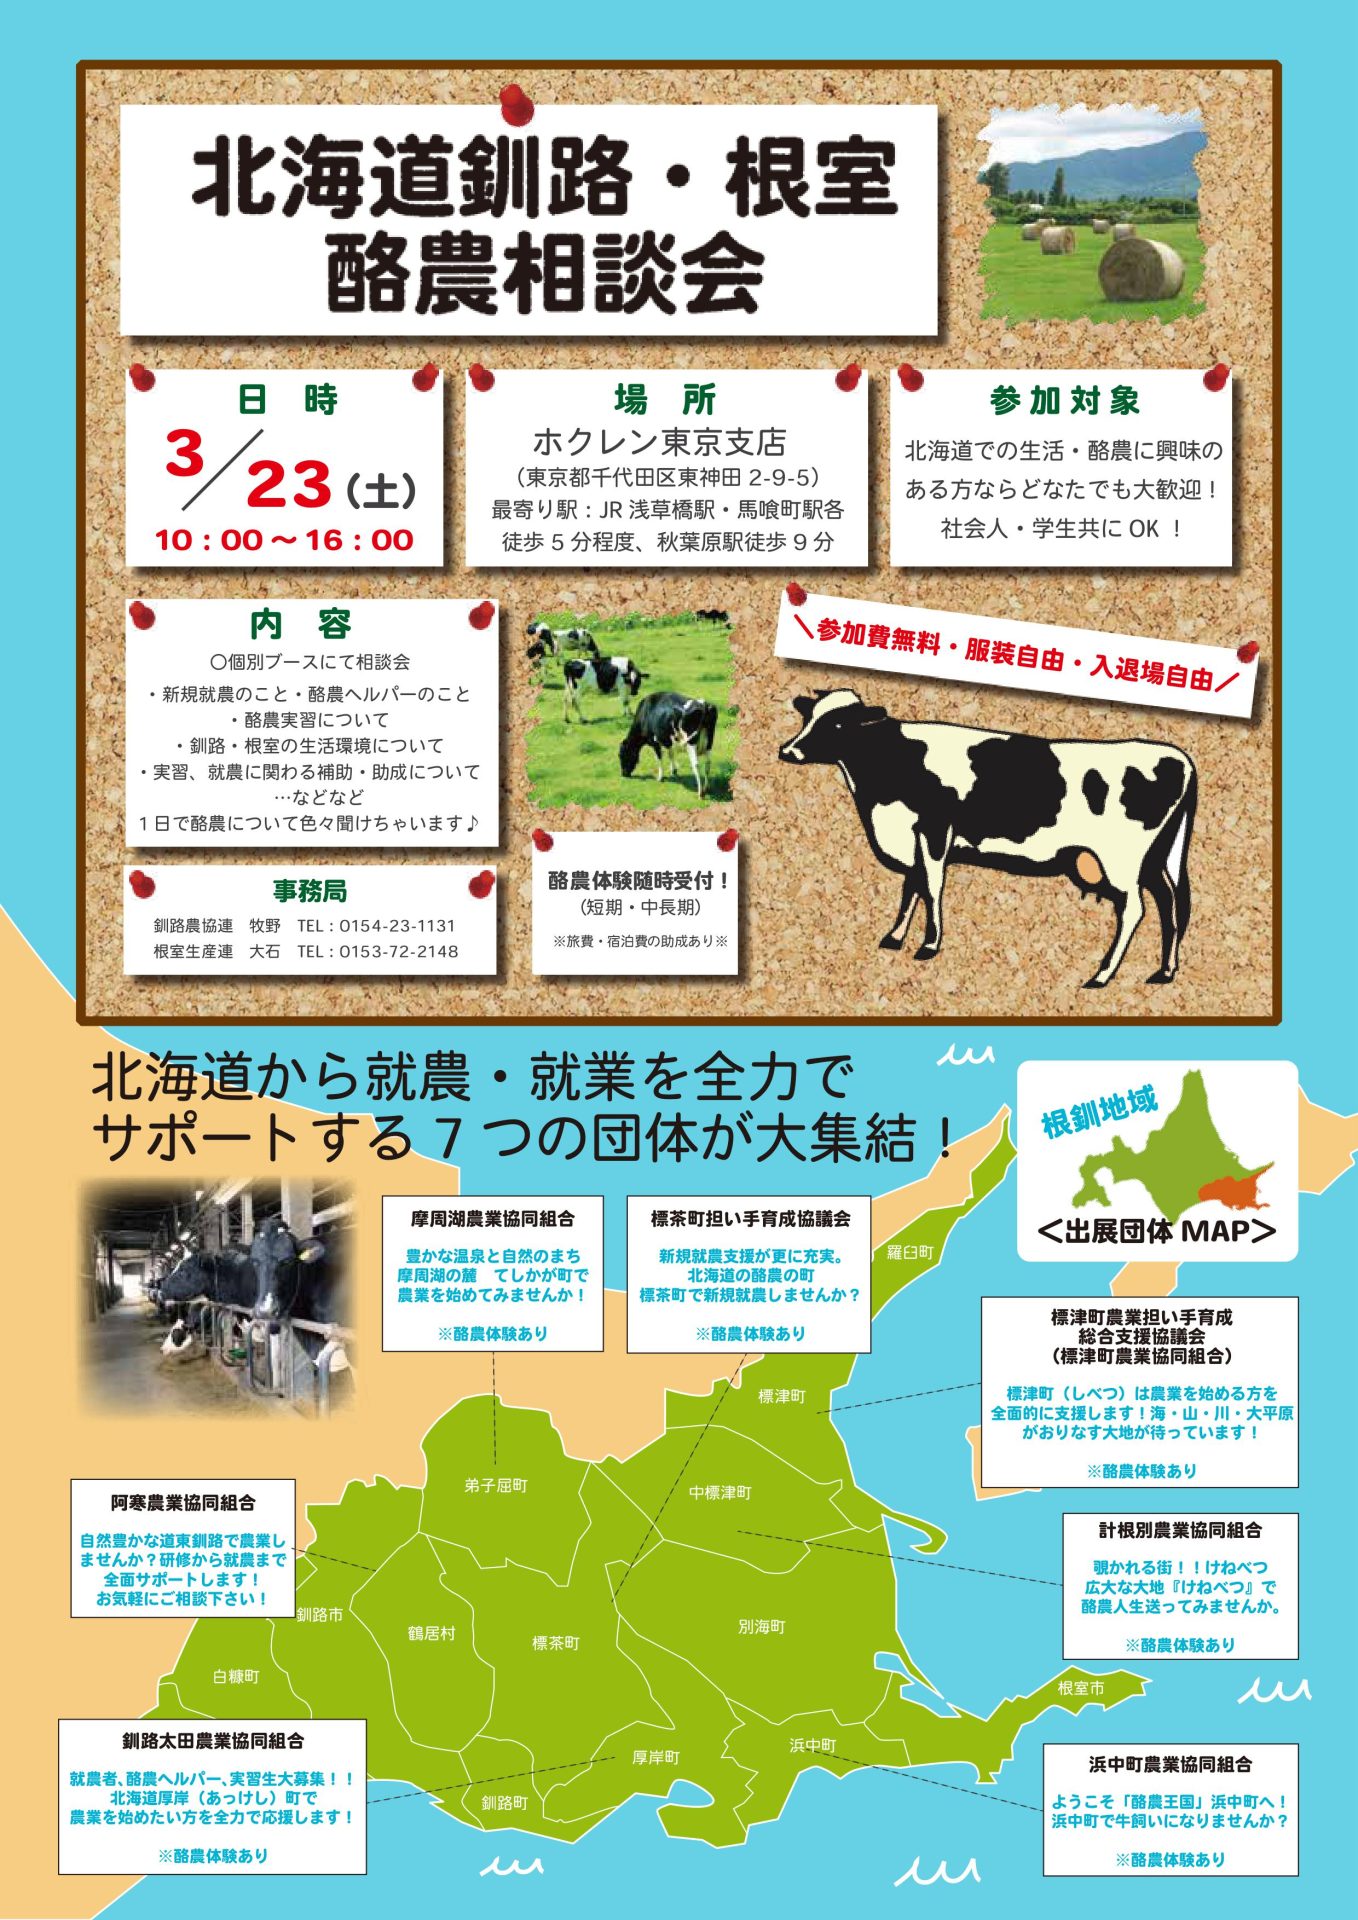 北海道釧路・根室 酪農相談会 | 移住関連イベント情報